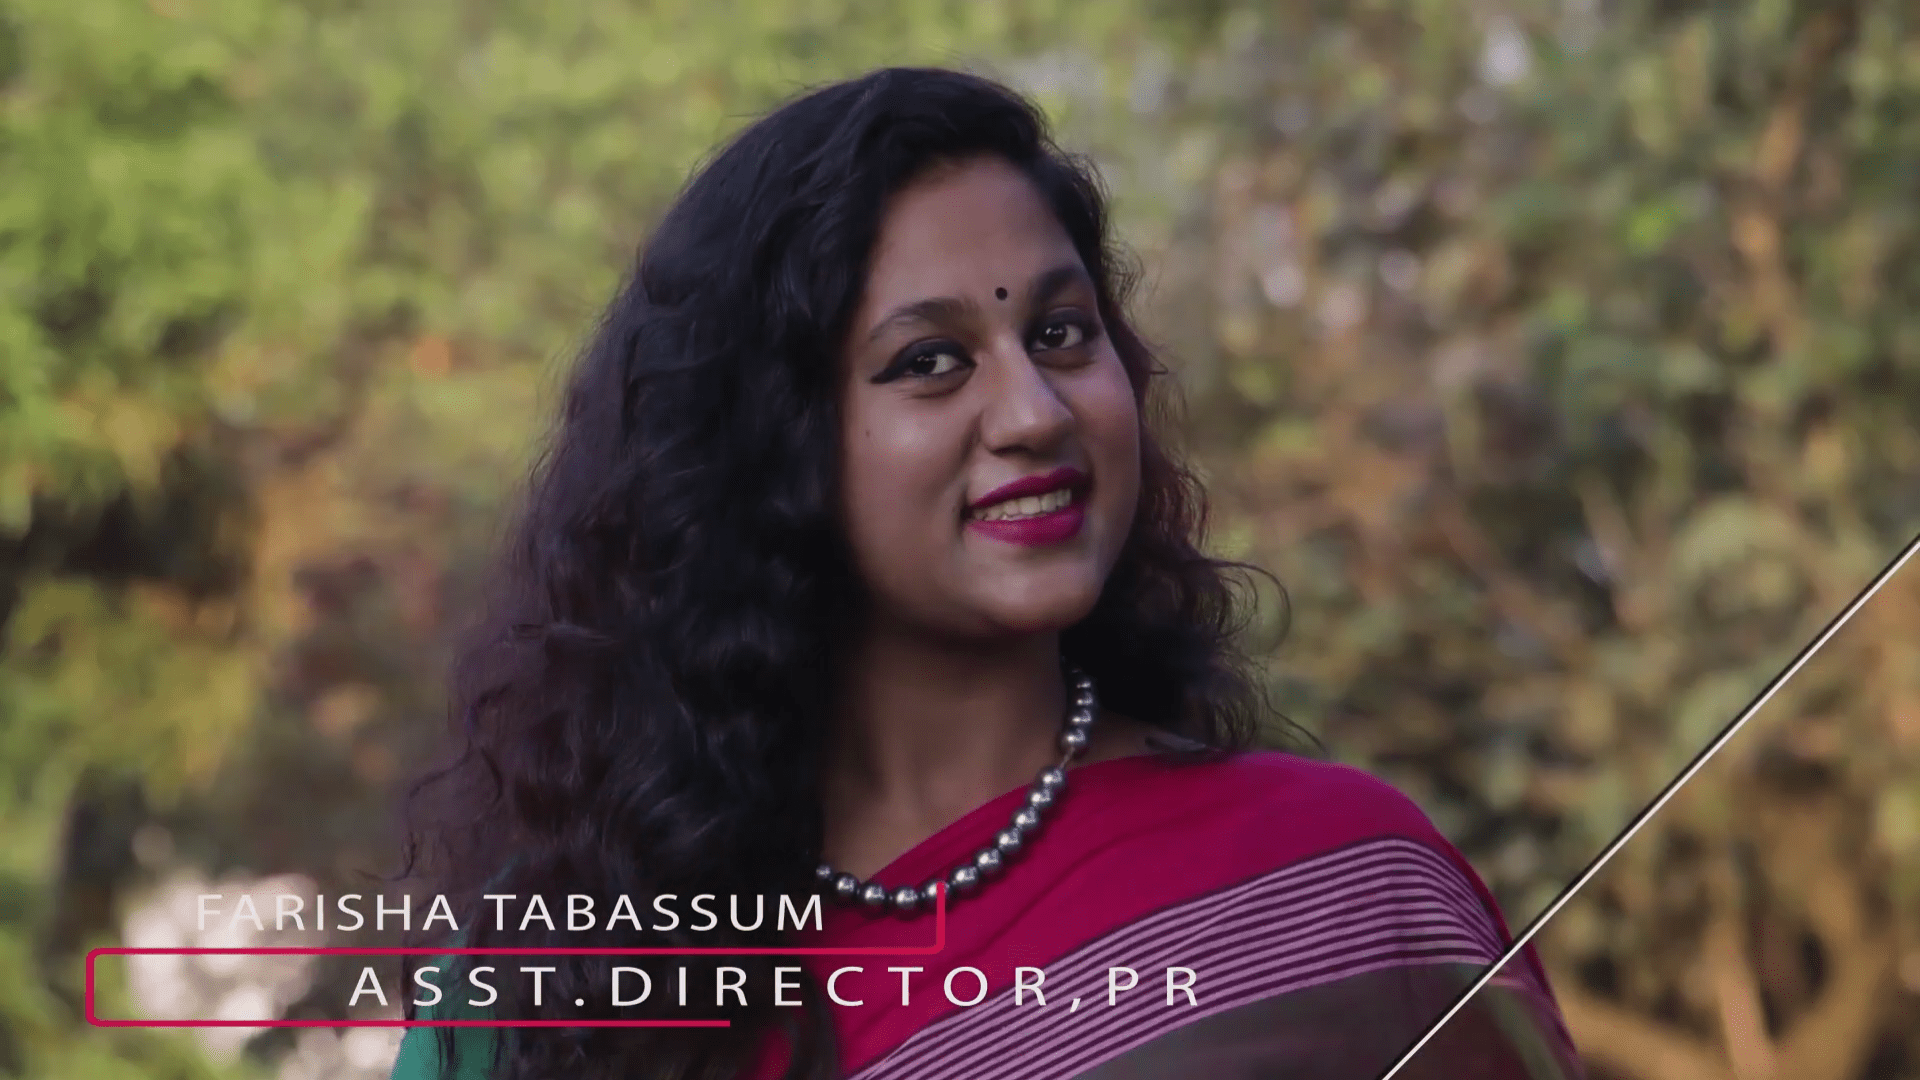 Farisha Tabassum